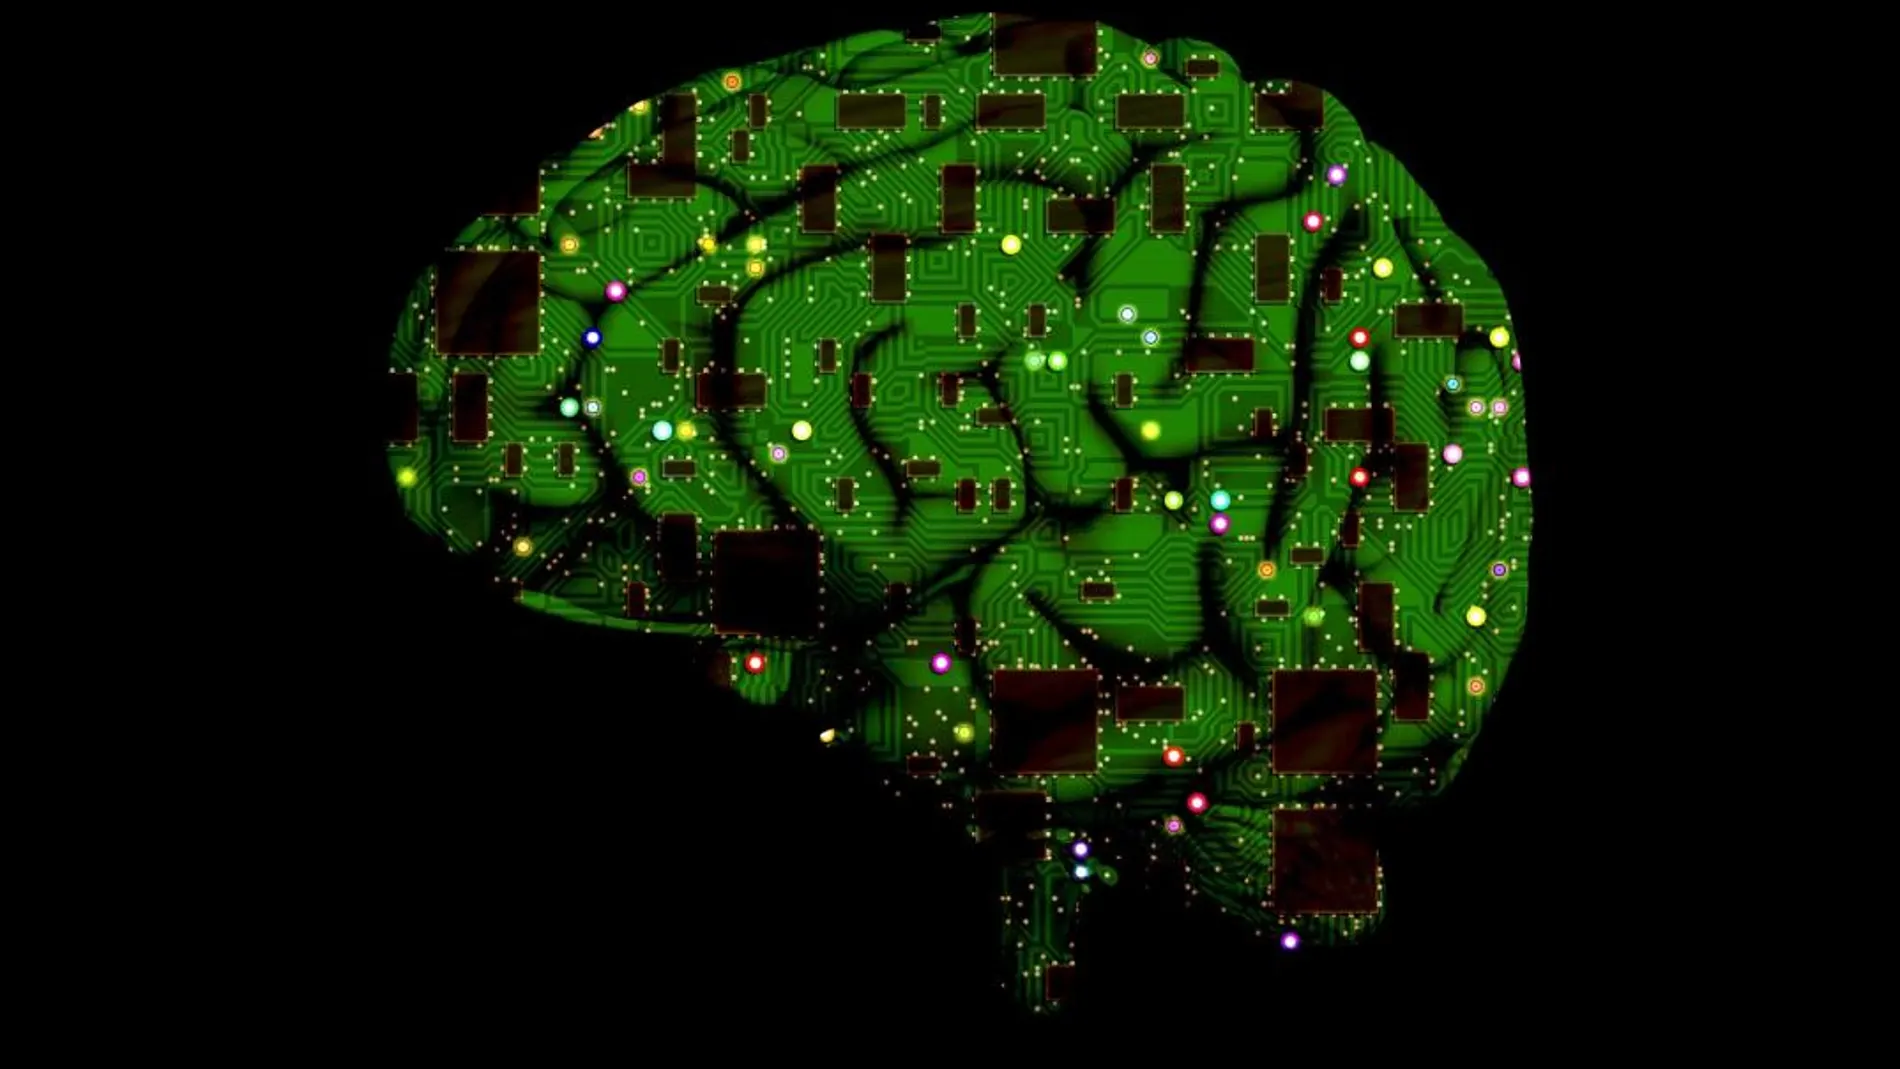 Los investigadores han conseguido crear artificialmente un circuito cerebral simple compuesto por un conjunto de neuronas cultivadas artificialmente